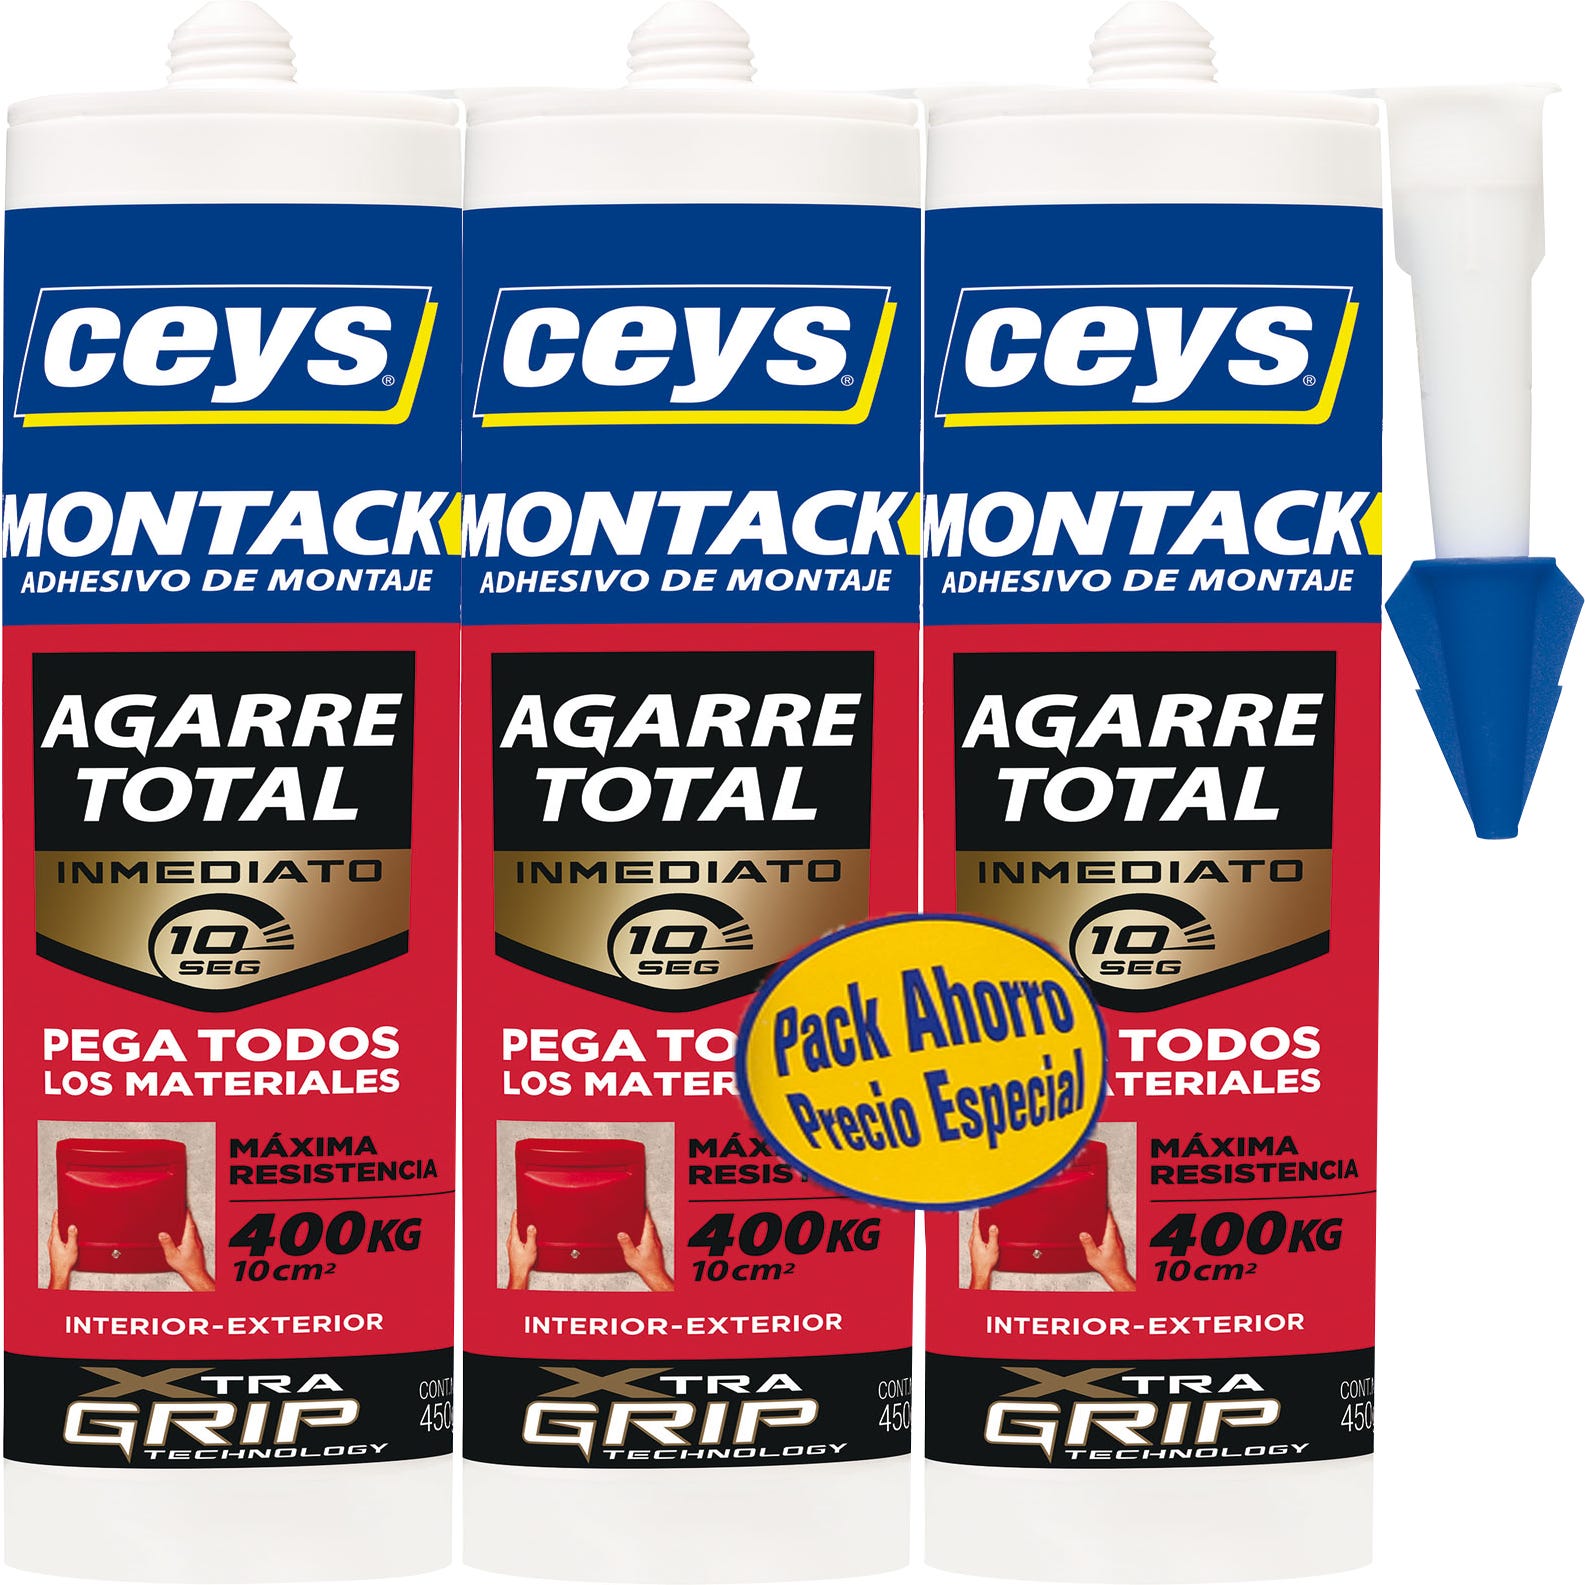 Adhesivo de montaje CEYS Montack Express blanco